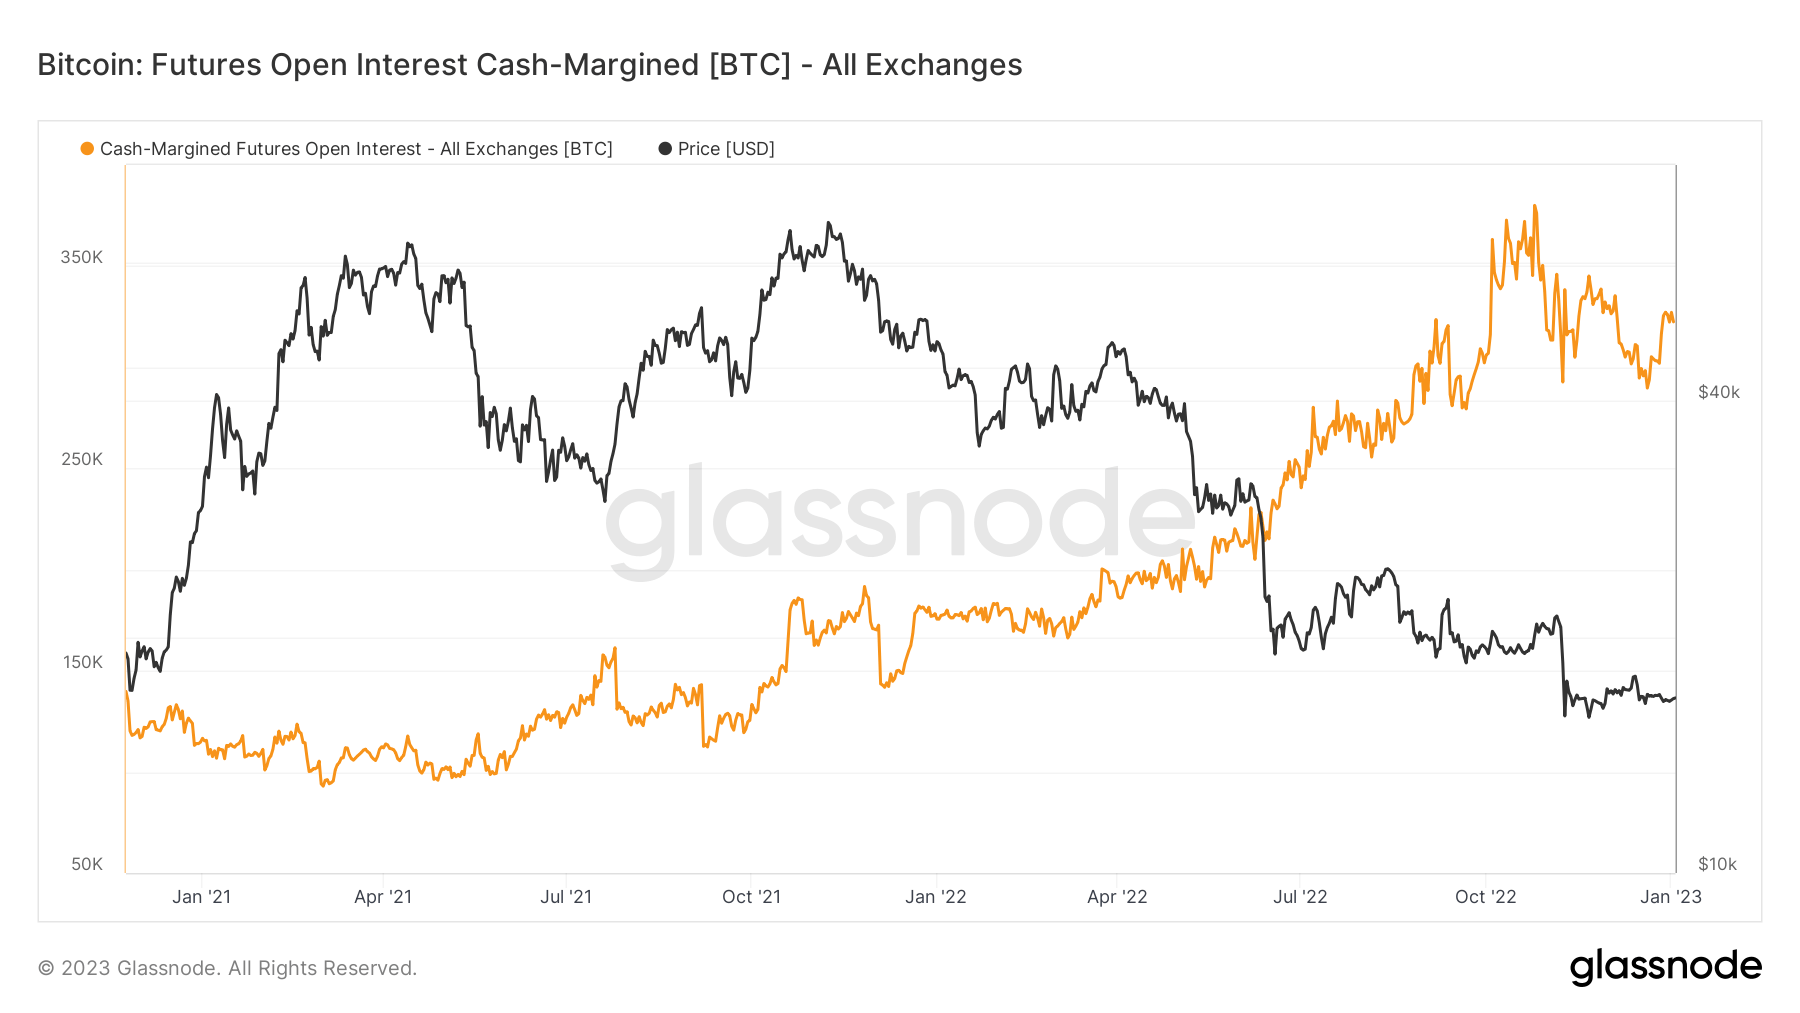 Bitcoin: Futures otvorene kamate s gotovinskom marginom [BTC] - Izvor: Glassnode